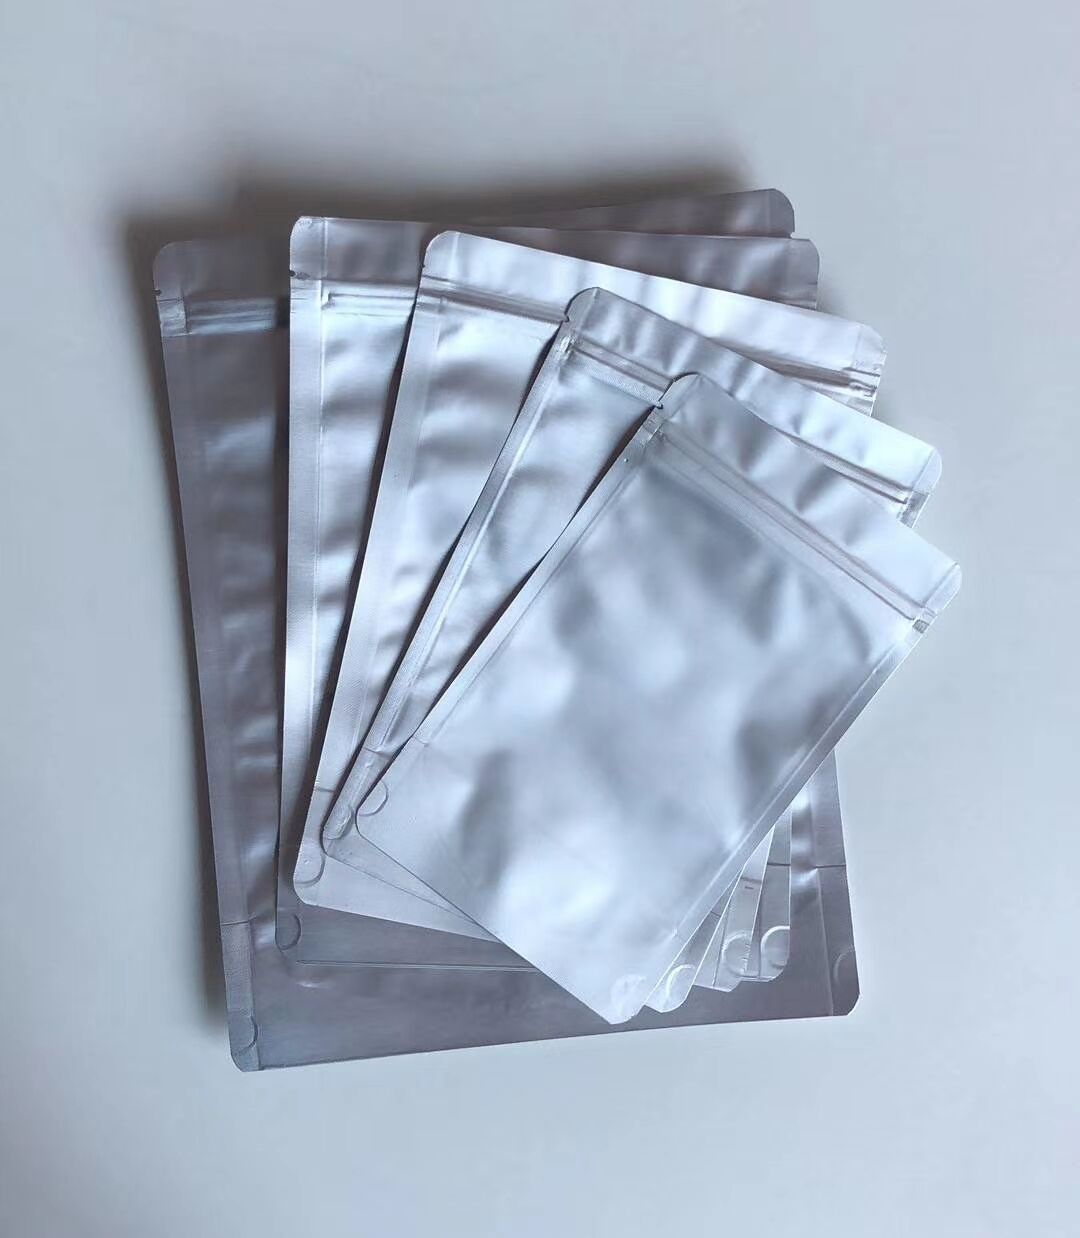 深圳抽真空铝箔食品包装袋,空白纯铝箔真空袋,可印刷